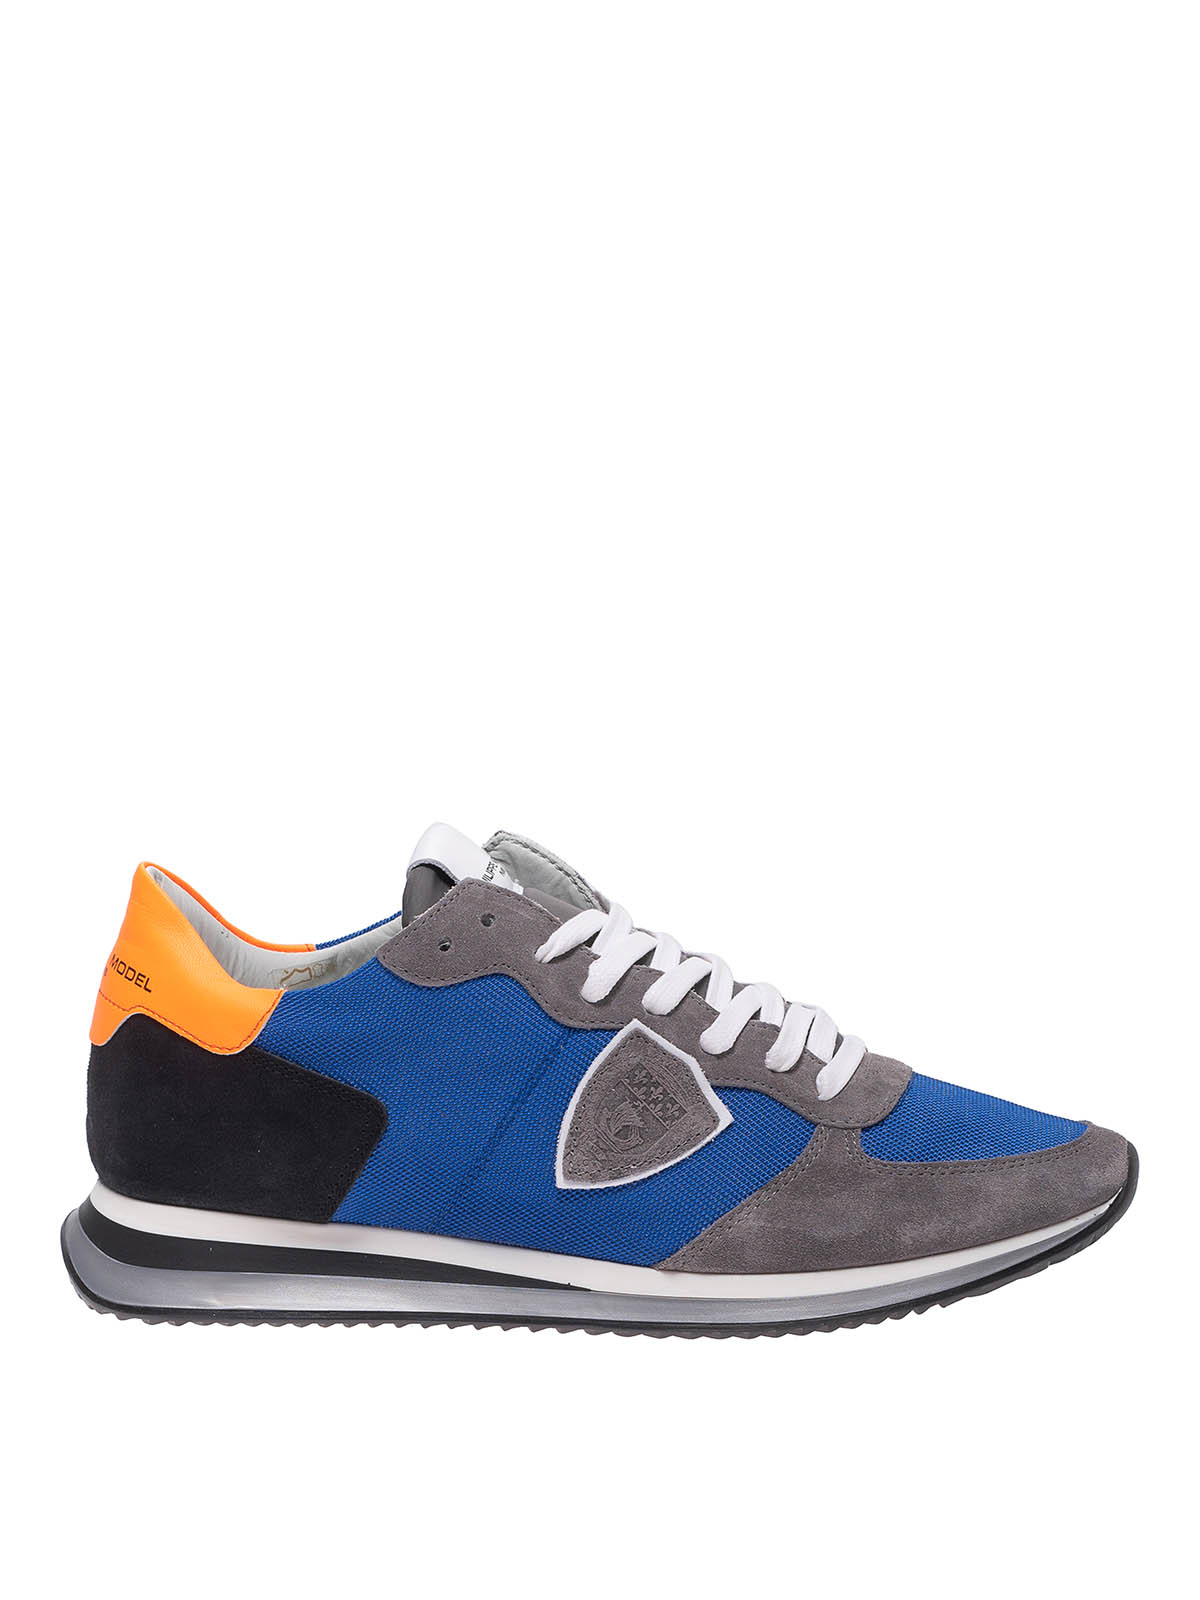 Philippe Model Trpx Mondial Pop Neon Sneakers In Bluette Gris In ...